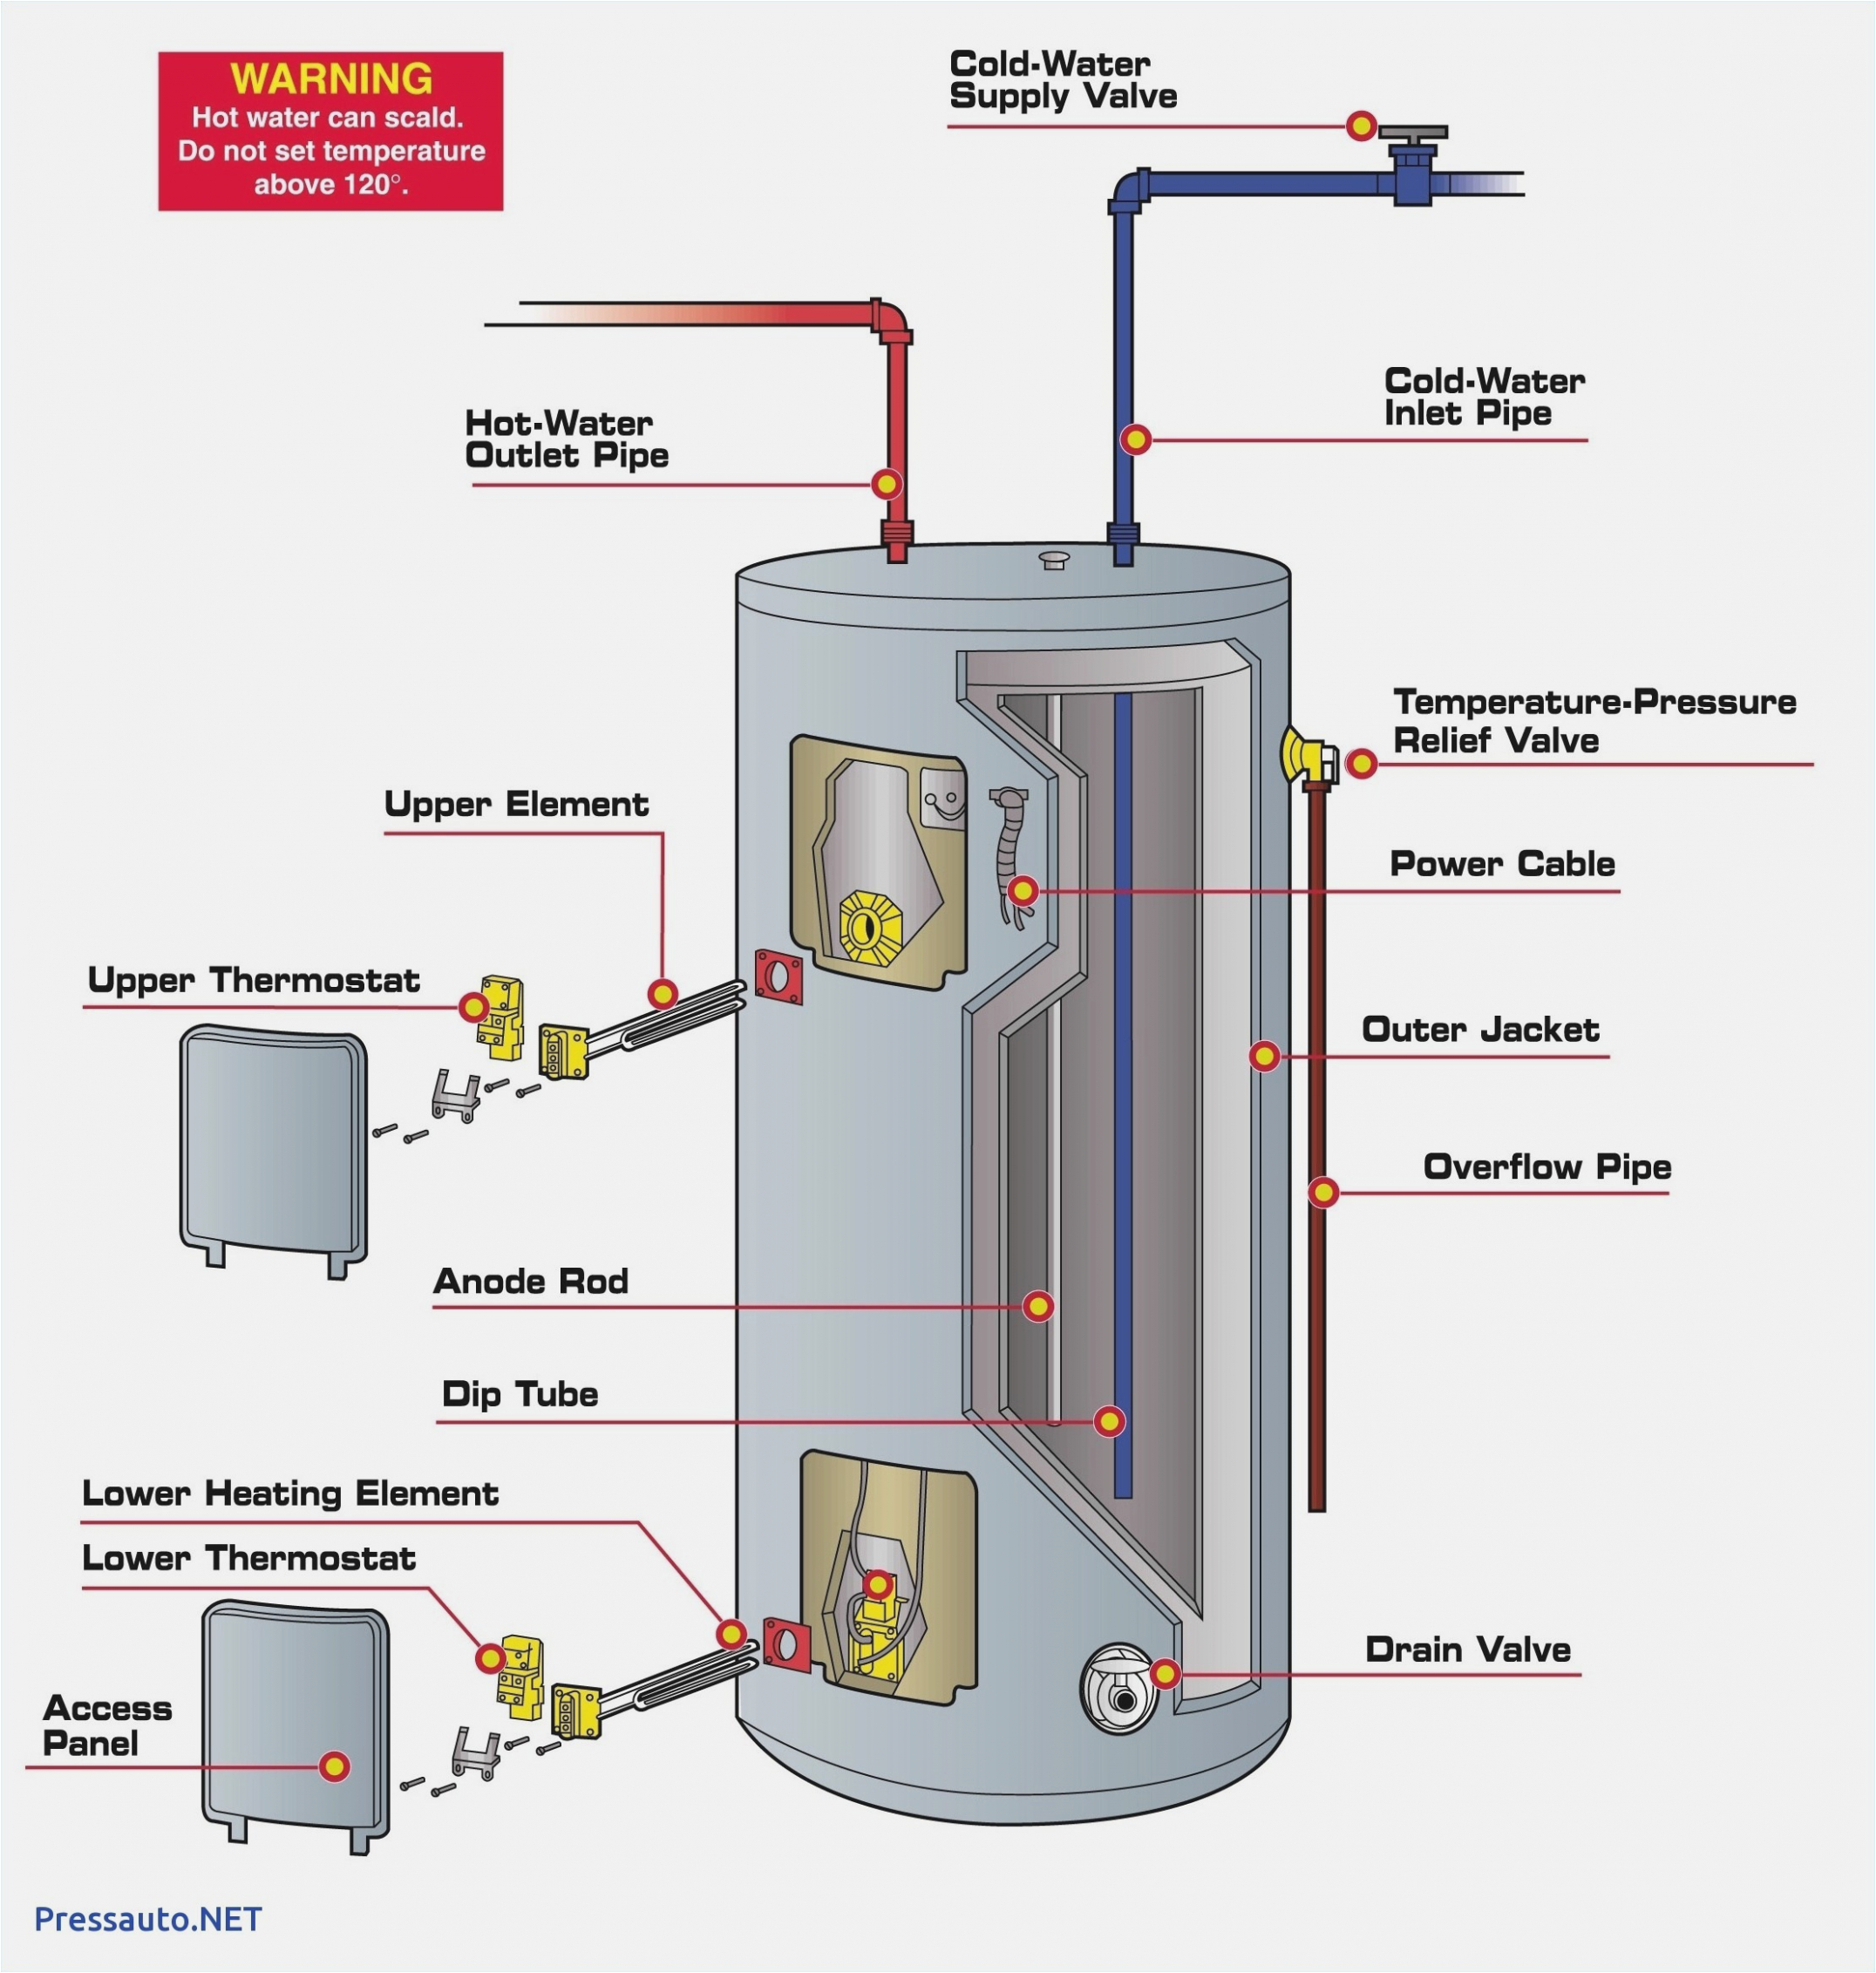 ruud water heater wiring diagram wiring diagram technic wiring diagram for ruud hot water heater ruud